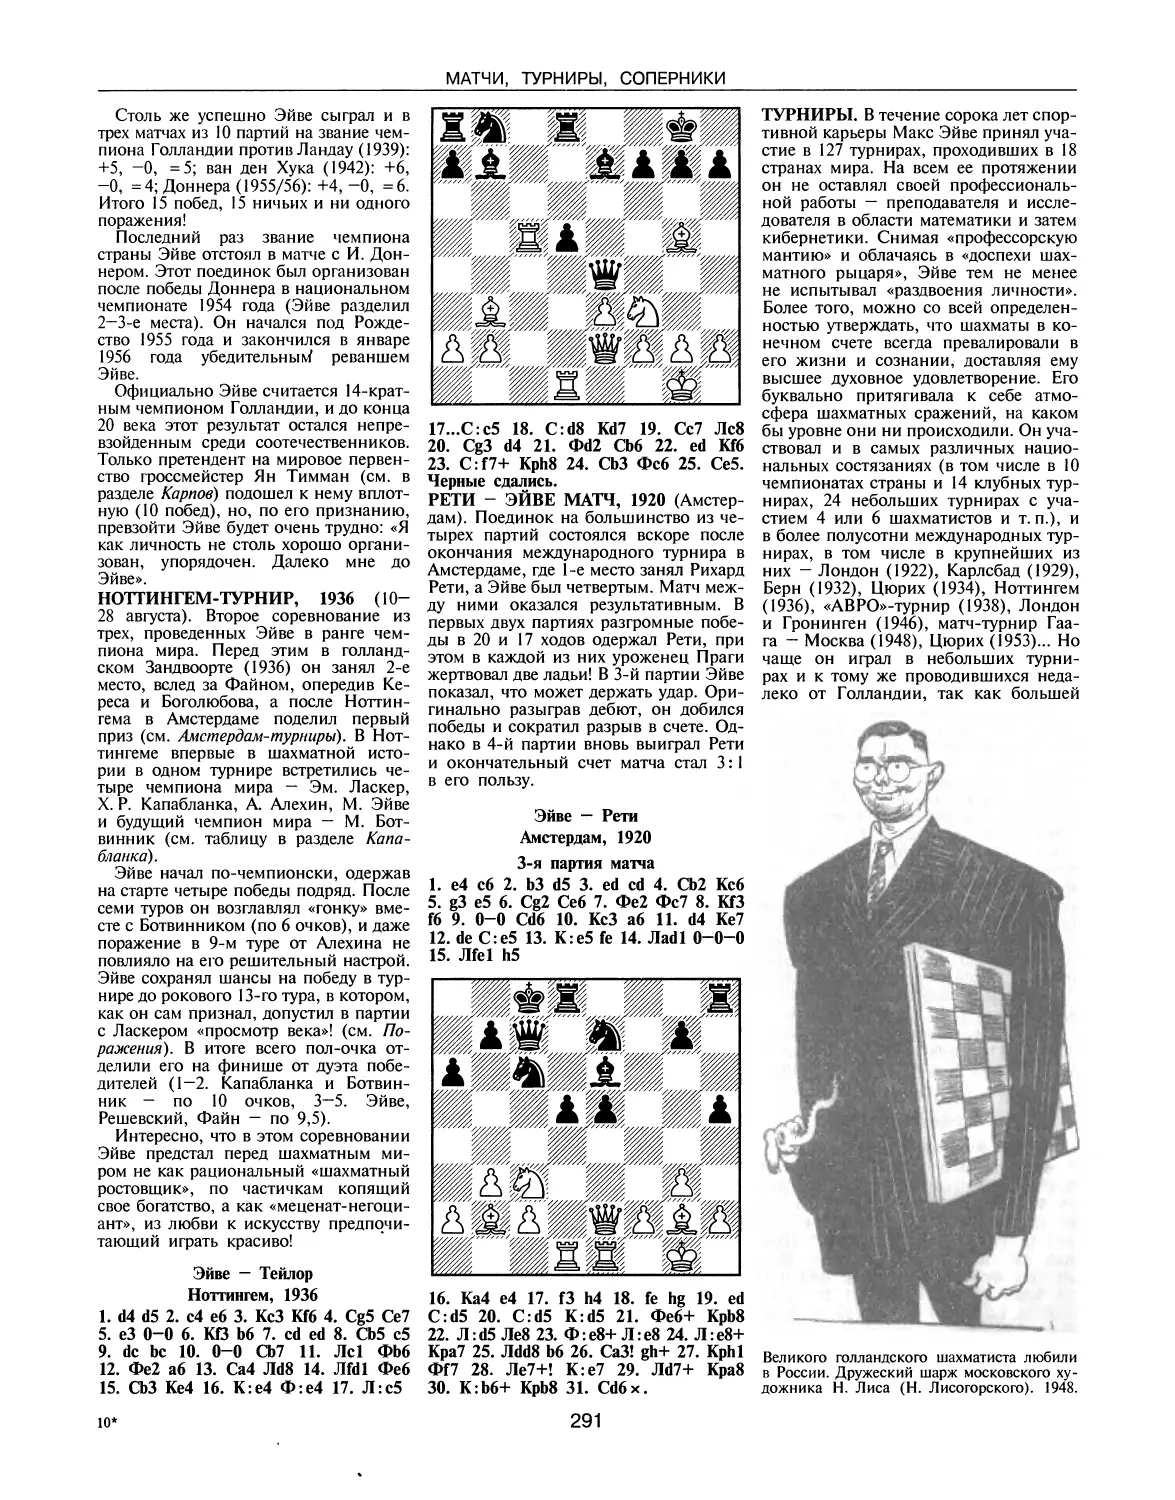 Ноттингем - турнир, 1936
Рети — Эйве матч, 1920
Турниры